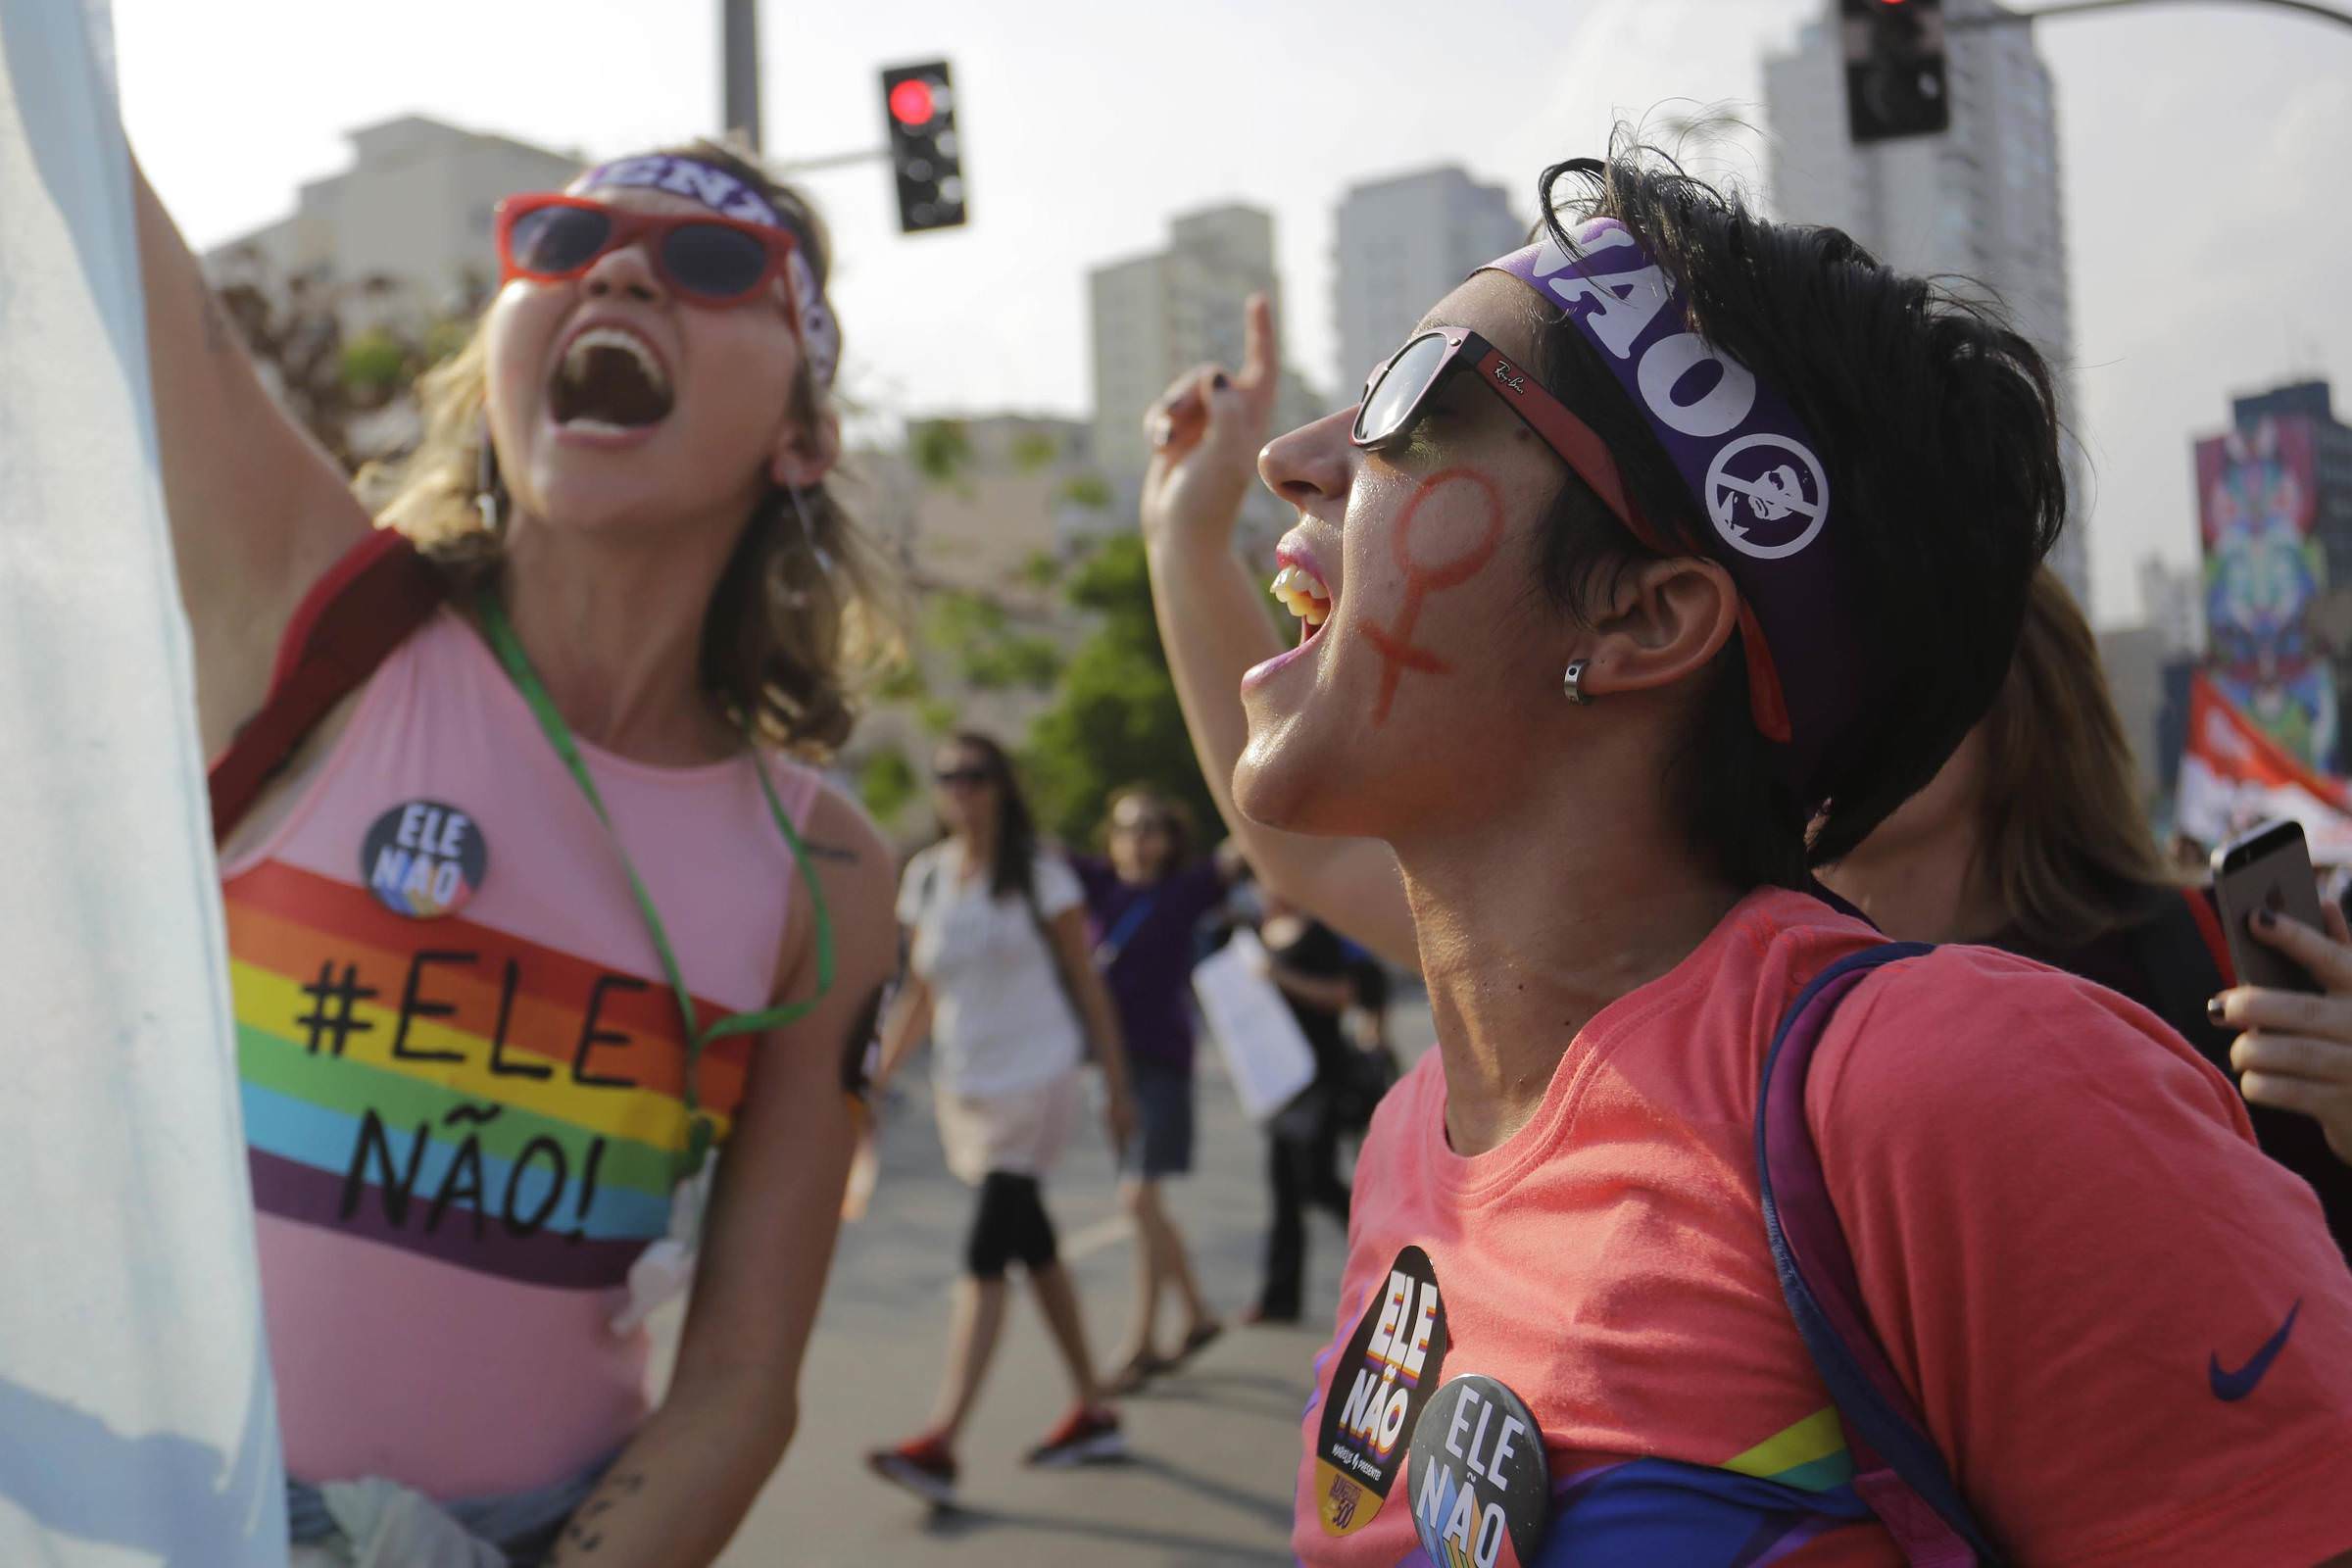 Grupos LGBTI+ pedem que gestão Bolsonaro reconheça famílias homoafetivas